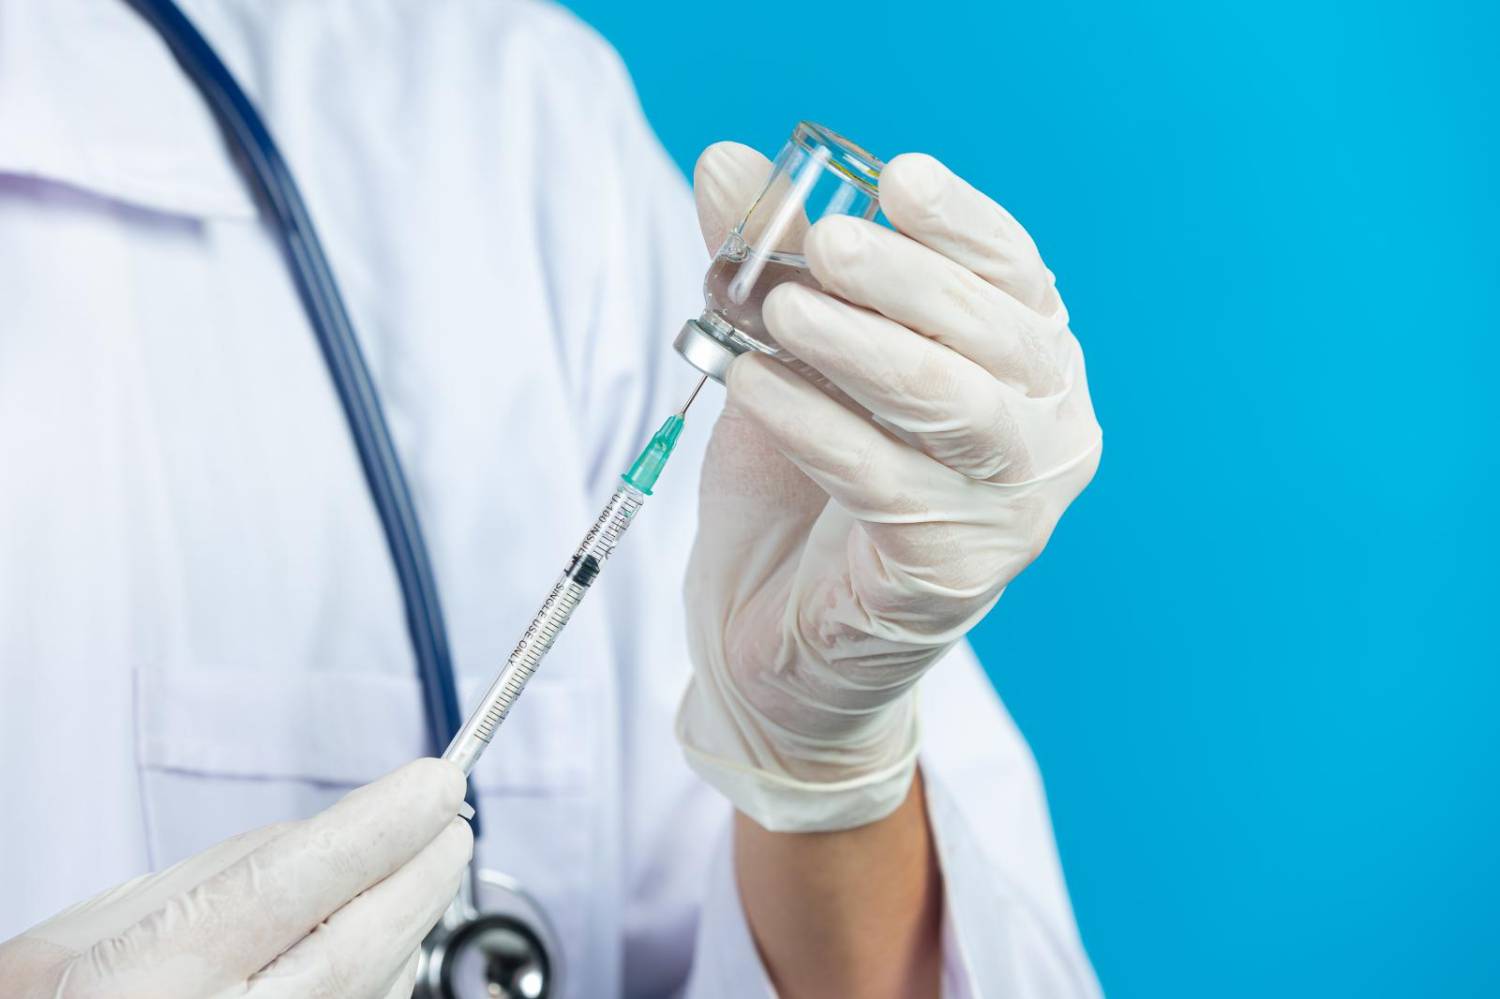 Eficácia da CoronaVac é semelhante as vacinas contra gripe e tuberculose